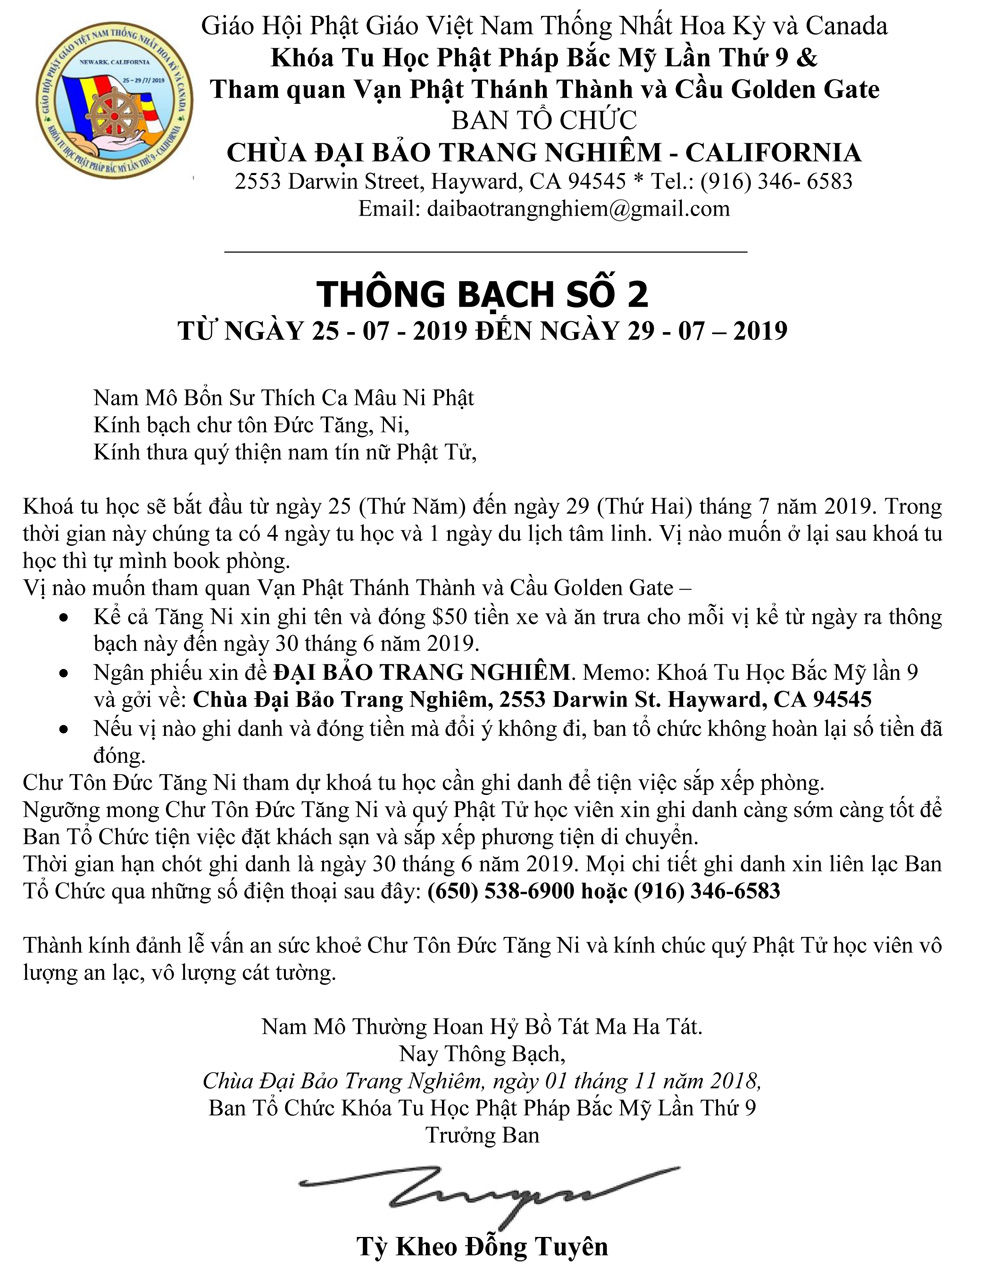 Thong bach so 2 - 2019  signature